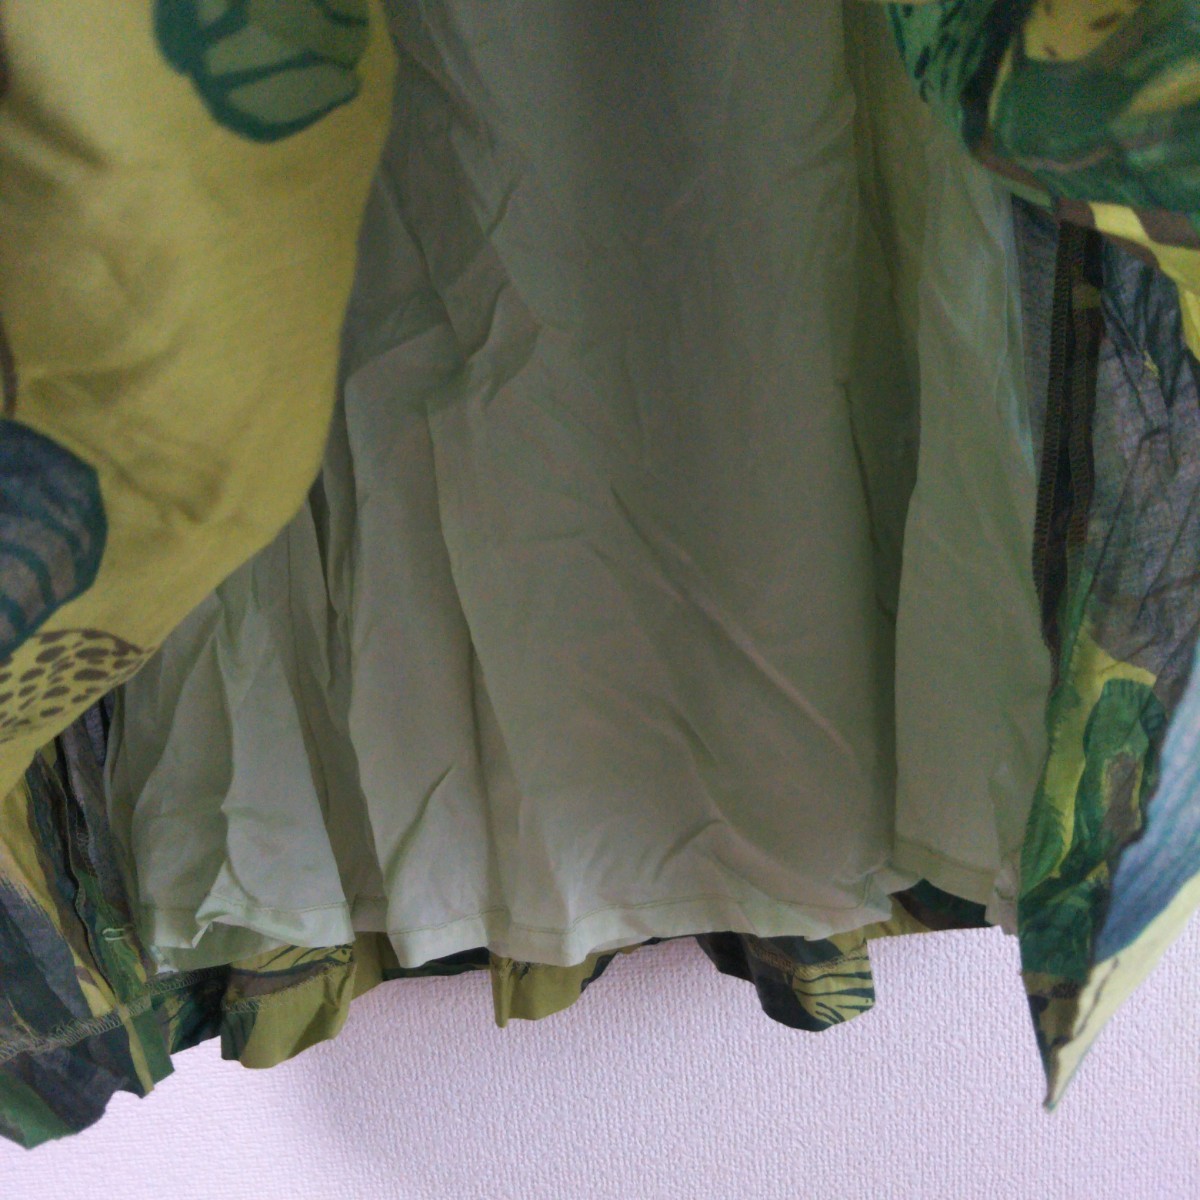 スキャパ Scapa レディース 40 緑 グリーン ロングスカート 植物柄 ボタニカル柄 カジュアル 大人かわいい レトロ感 古着女子 フルジョ/G11_画像7